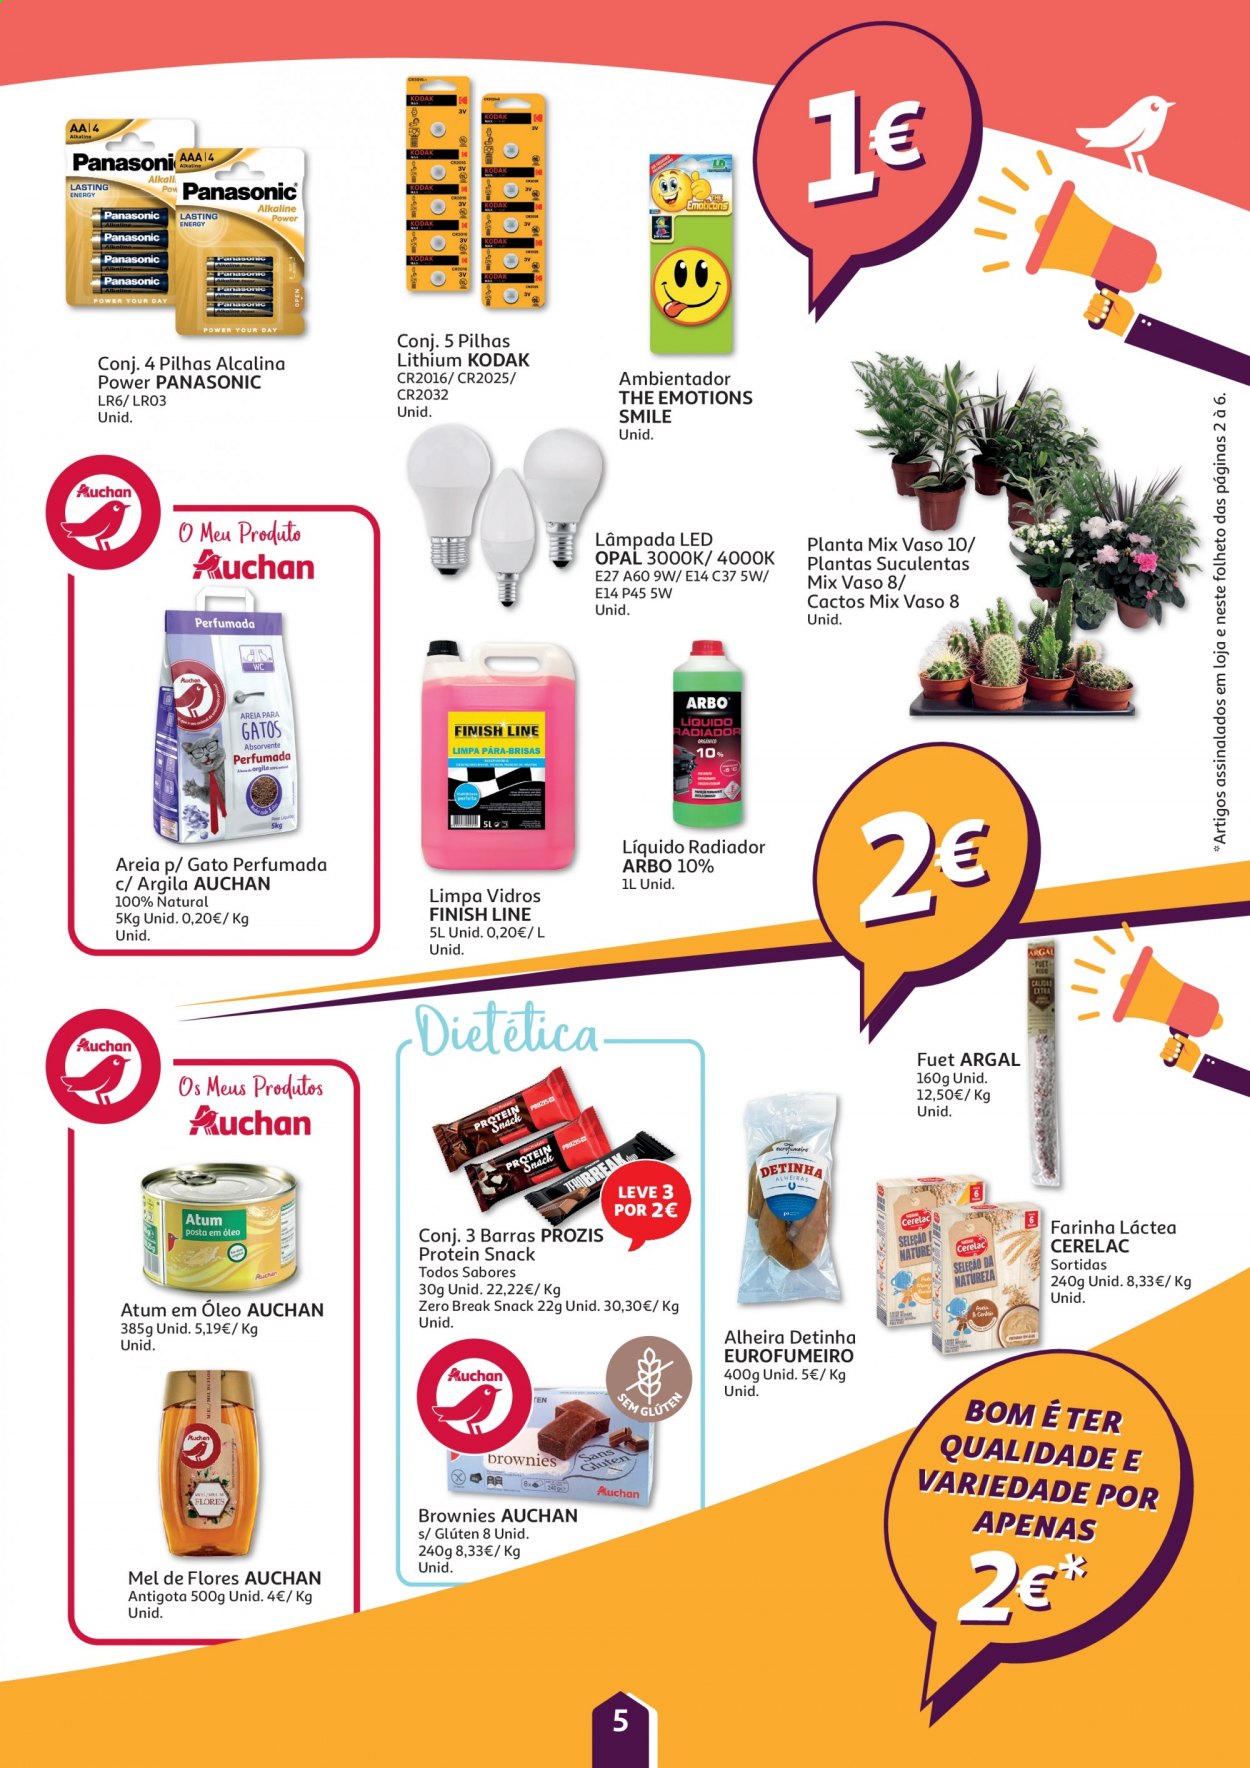 thumbnail - Folheto Auchan - 22.1.2021 - 1.2.2021 - Produtos em promoção - Panasonic, atum, farinha, farinha láctea, patatas, mel, limpa vidros, Finish, pilhas alcaninas, lâmpada, vaso. Página 5.